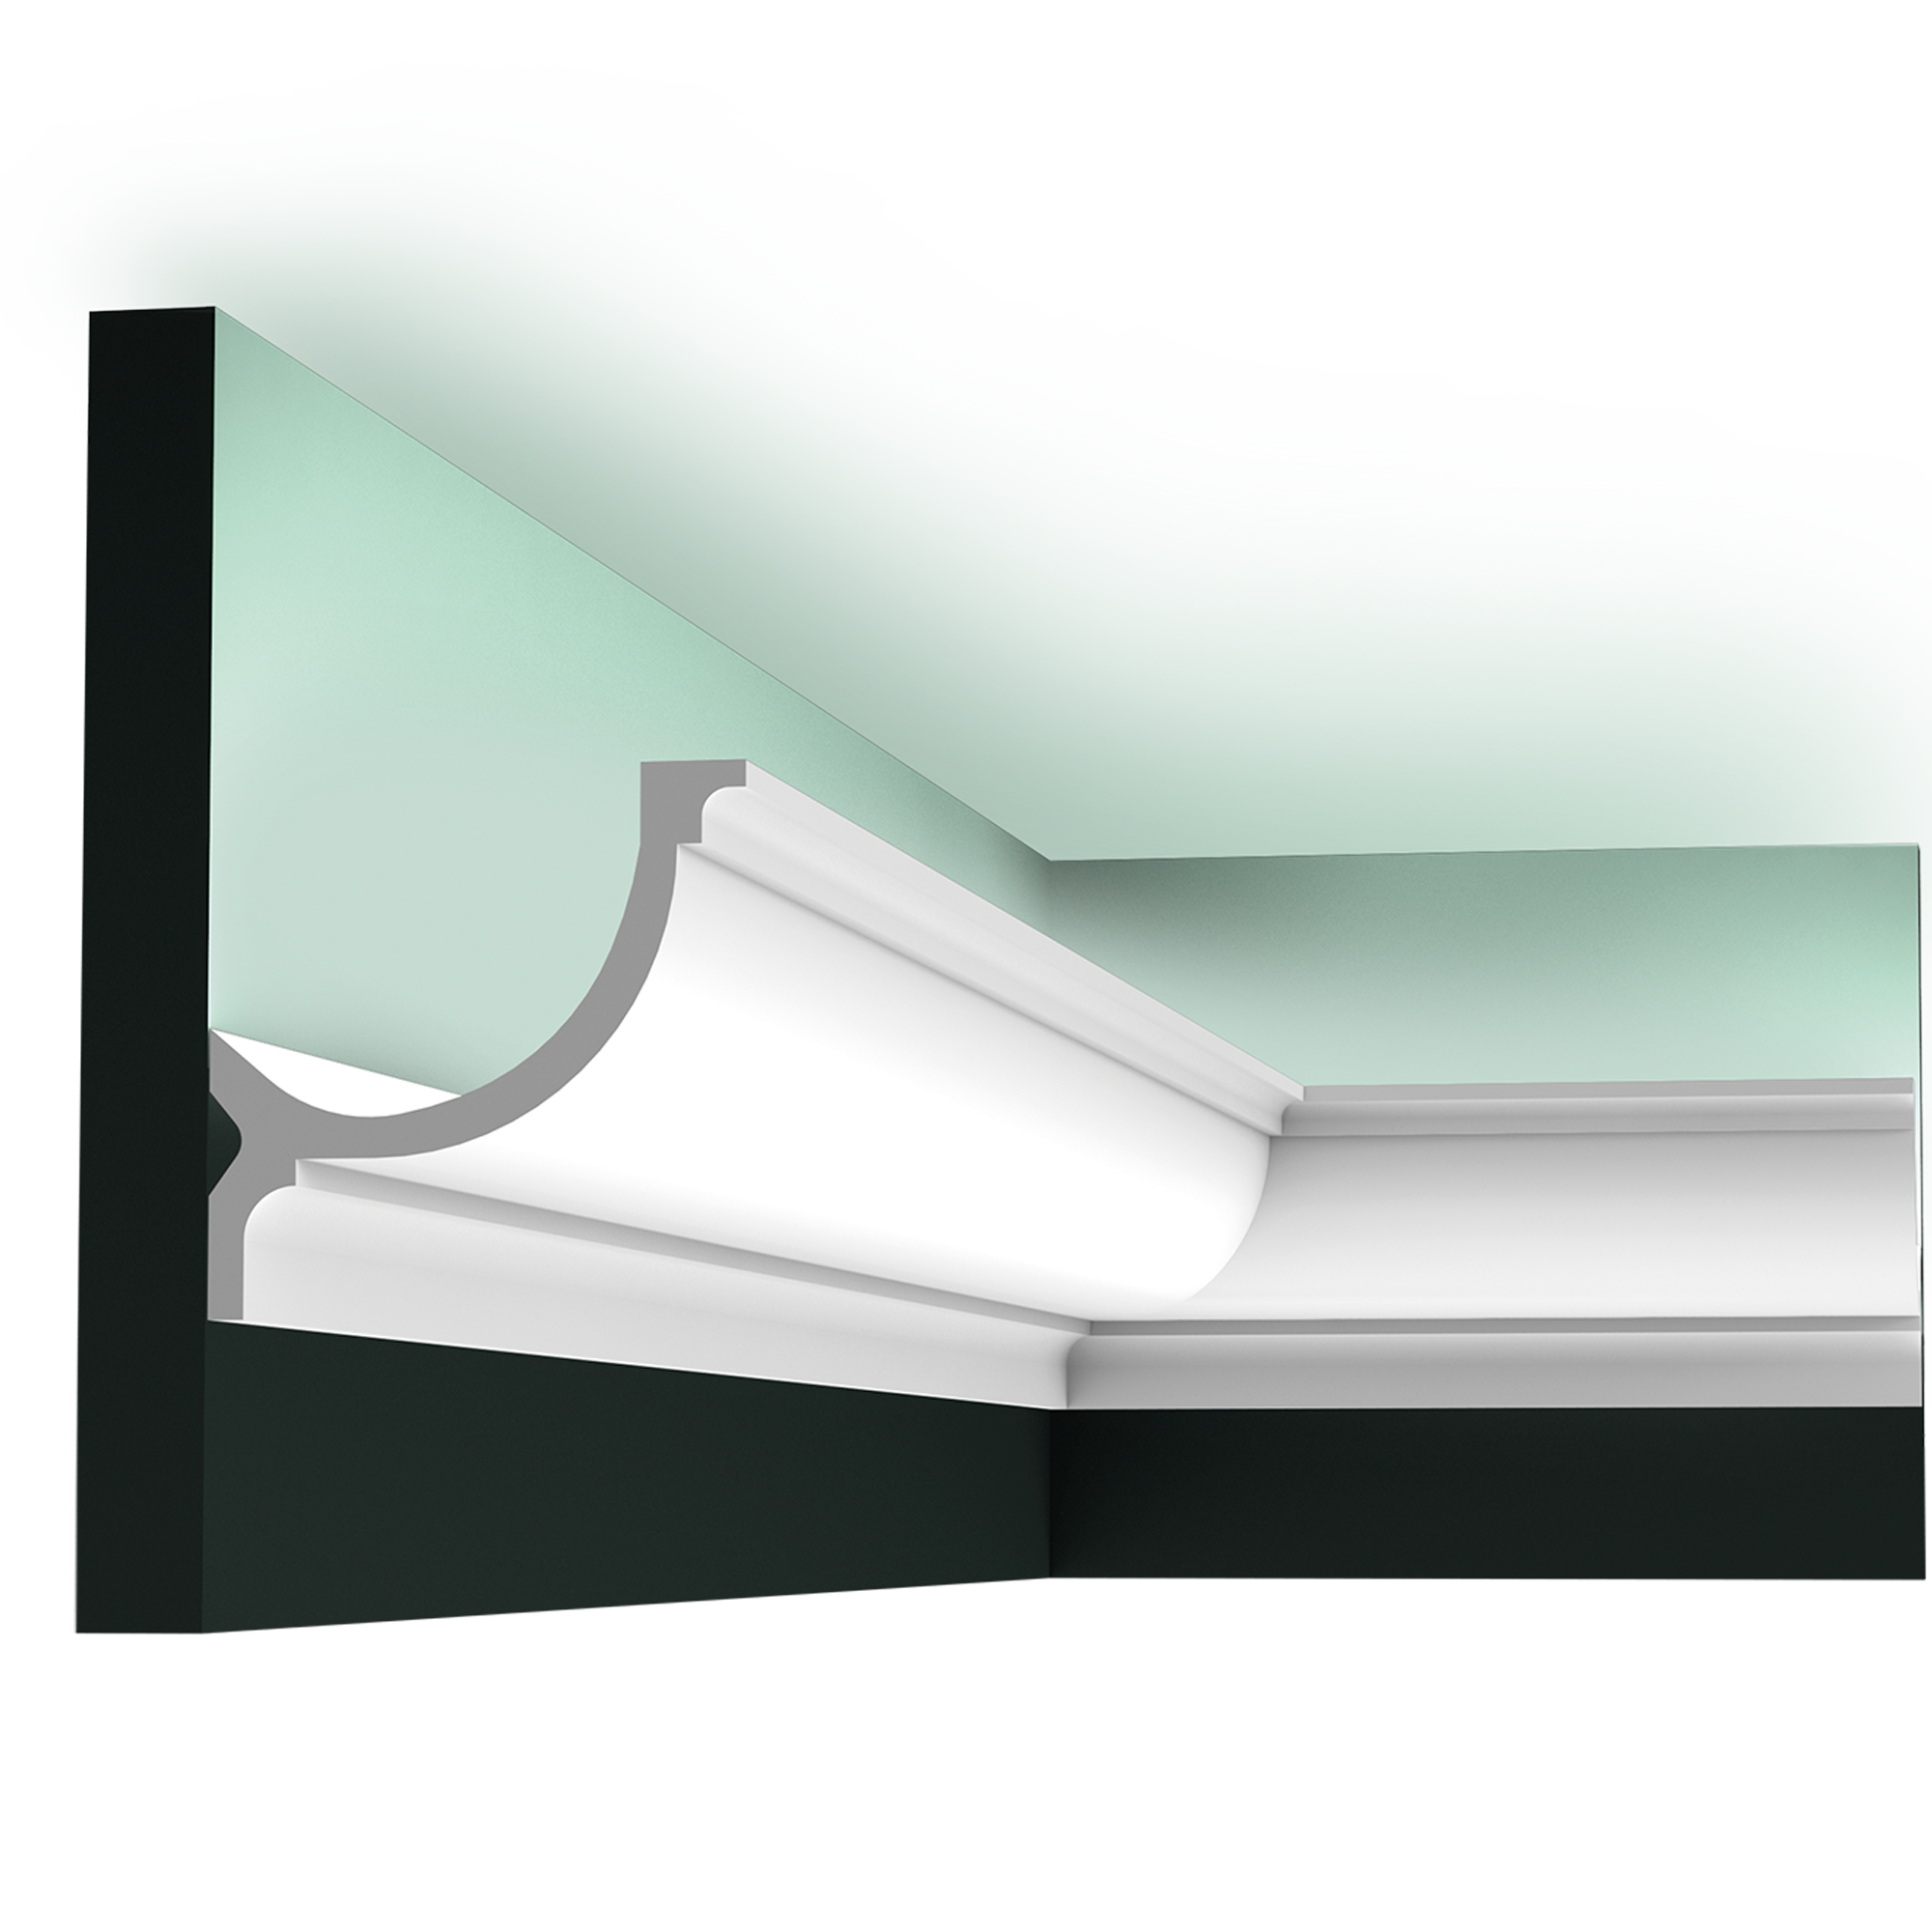 Потолочный плинтус с подсветкой: установка светодиодной ленты по периметру потолка